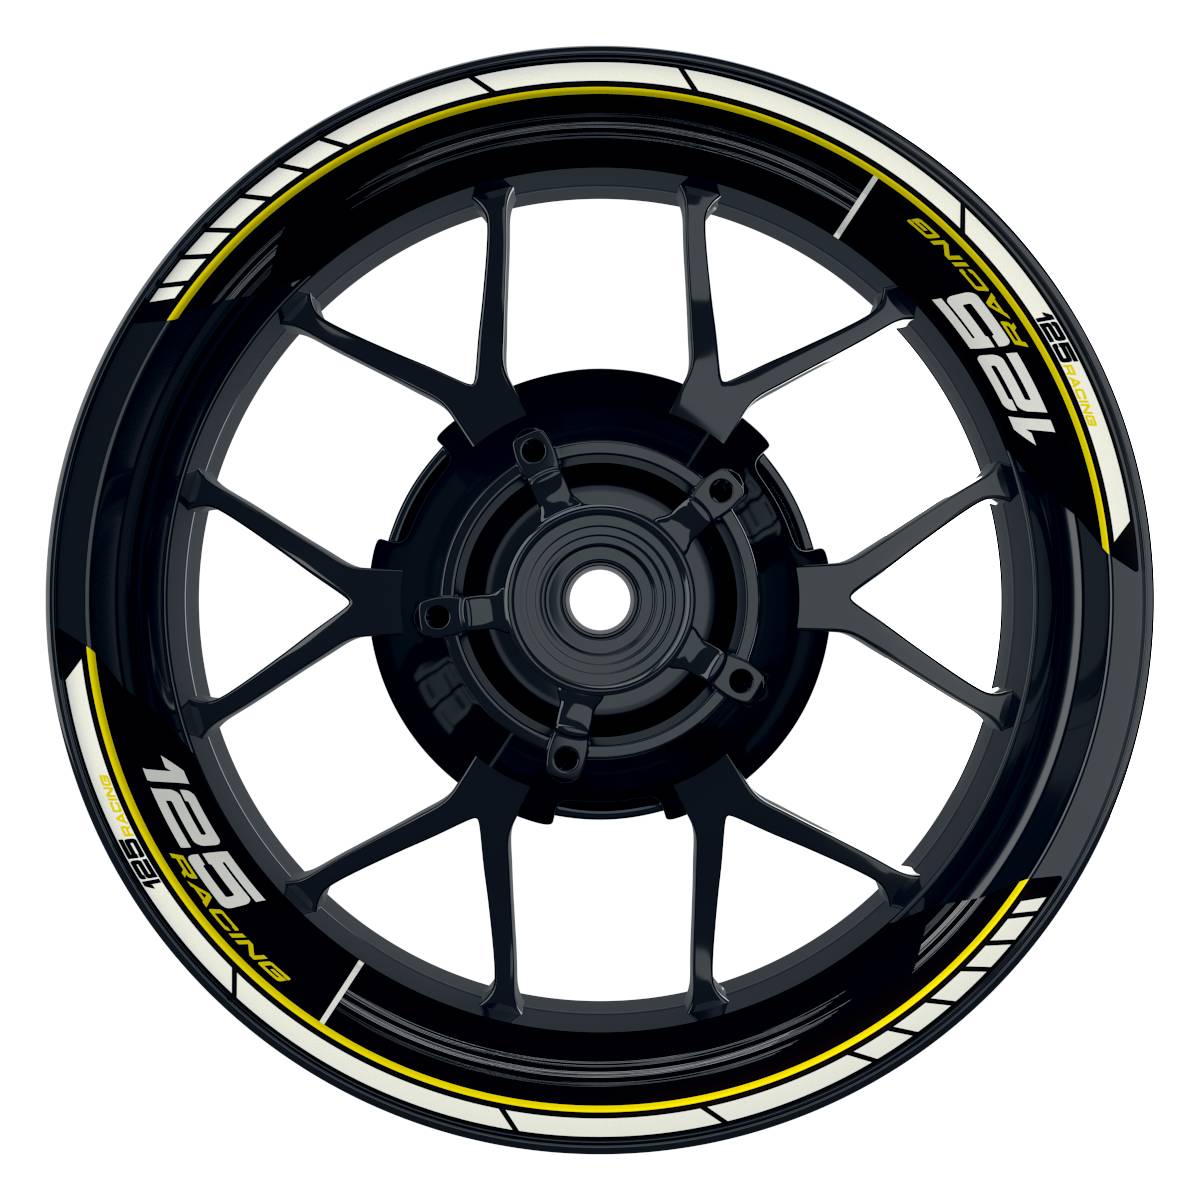 KTM Racing 125 Scratched schwarz gelb Frontansicht